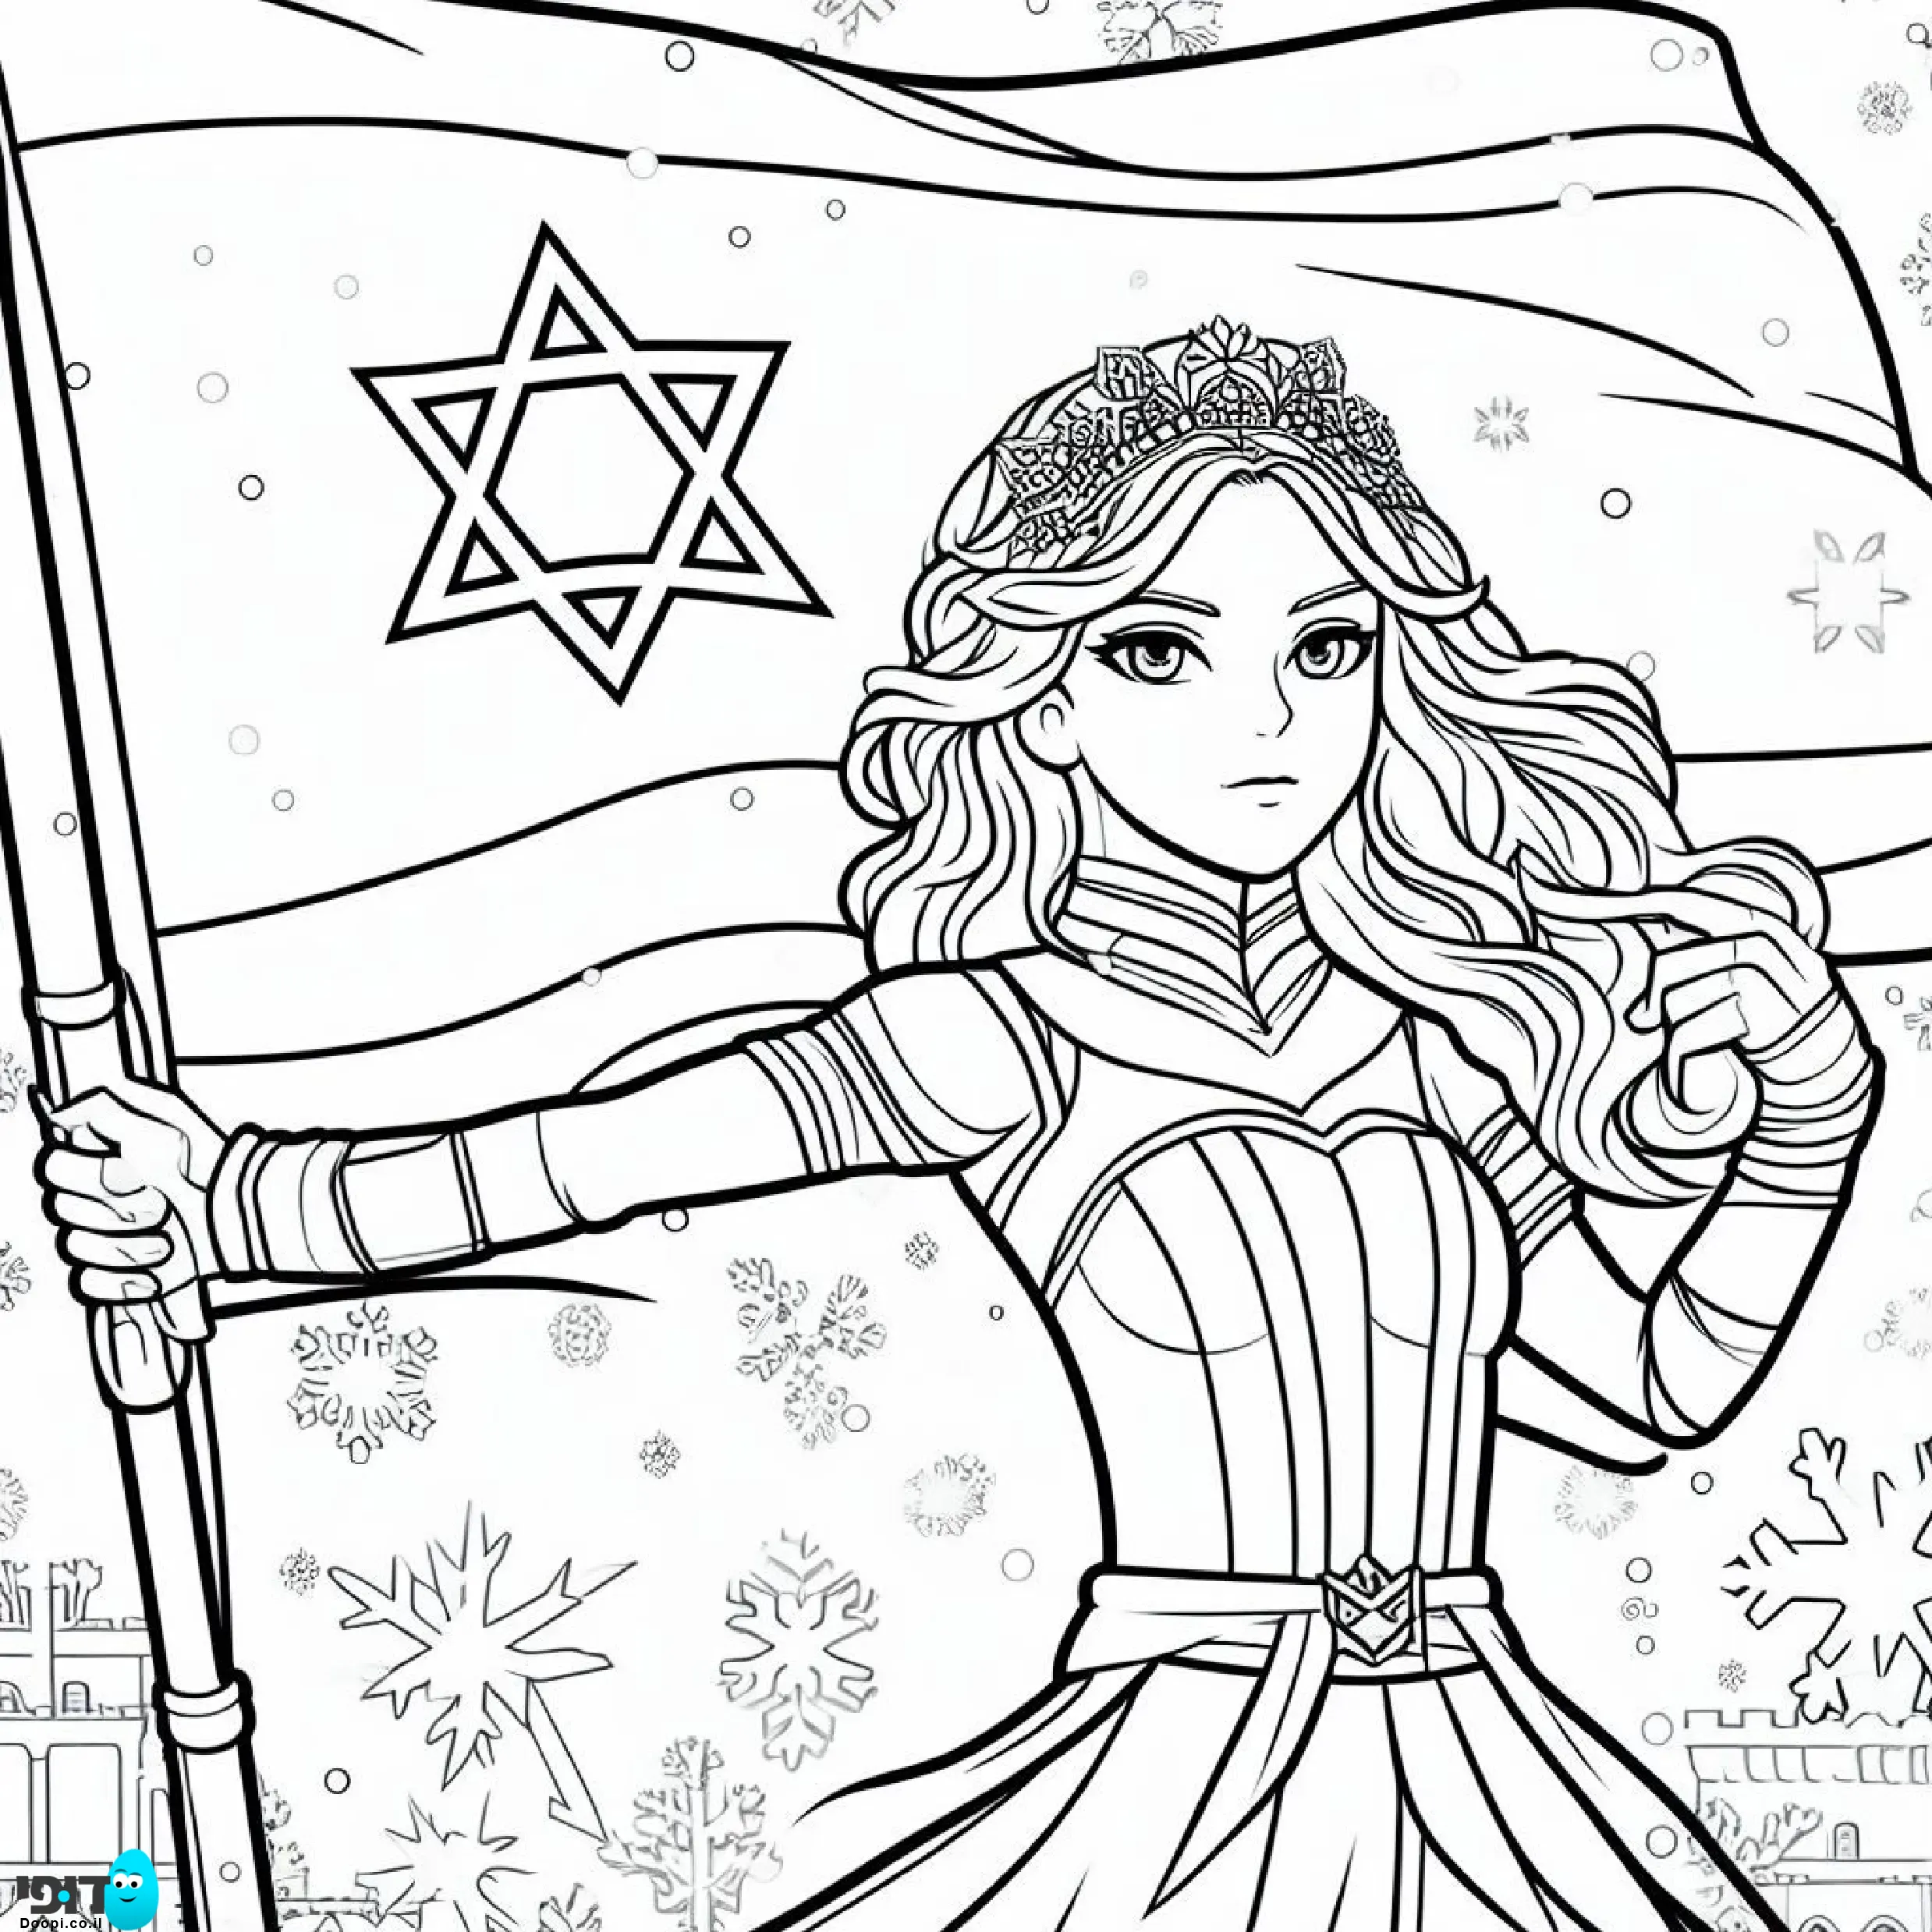 דף צביעה נסיכה לוחמת עם דגל ישראל